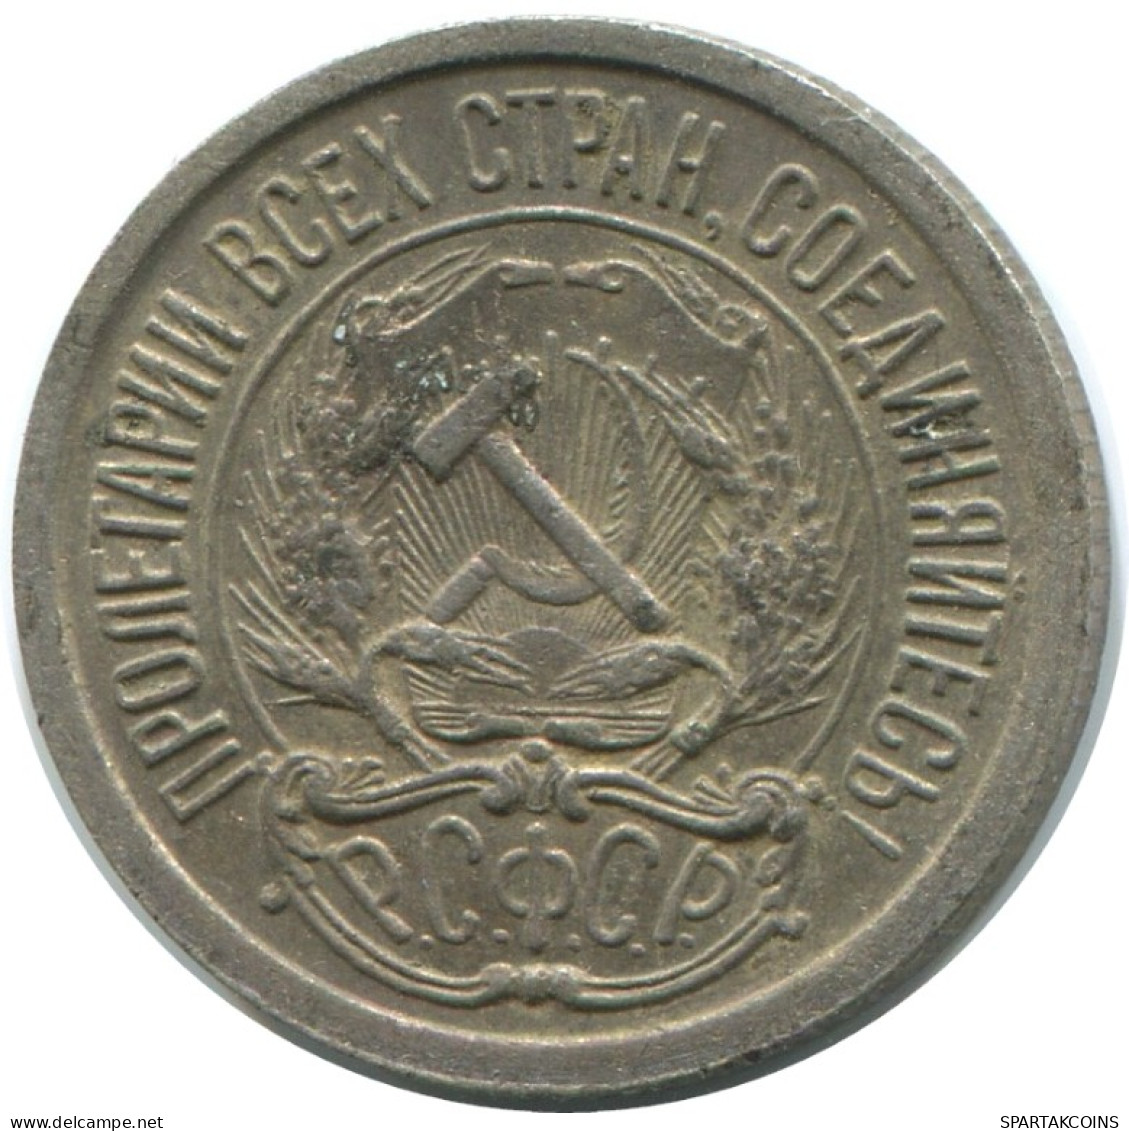 10 KOPEKS 1923 RUSSIA RSFSR SILVER Coin HIGH GRADE #AE877.4.E.A - Russie